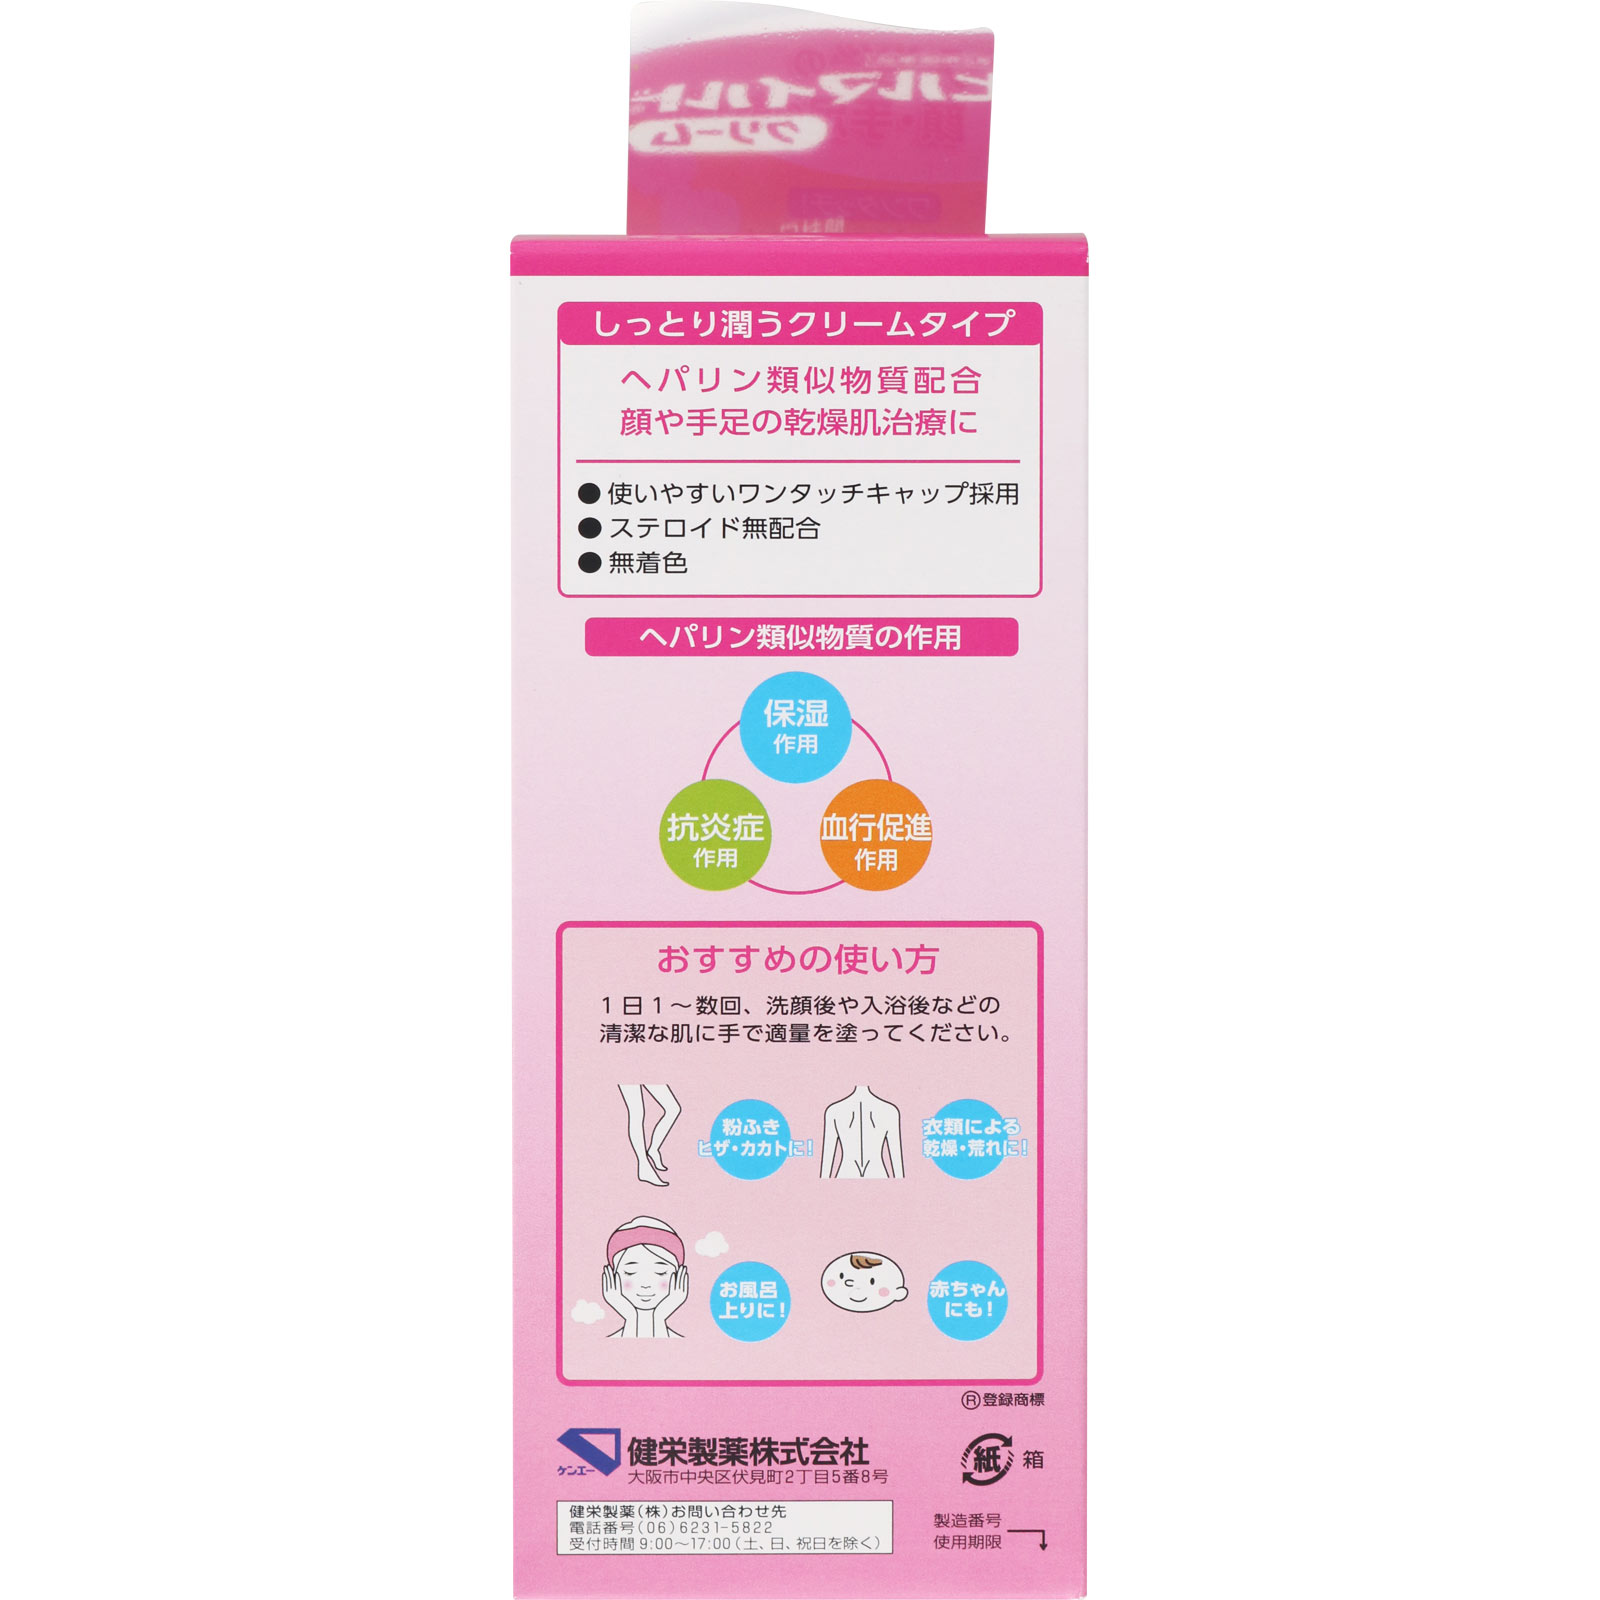 ヒルマイルドクリーム 100g 【第二類医薬品】: 医薬品・衛生用品 Tomod's ONLINE SHOP